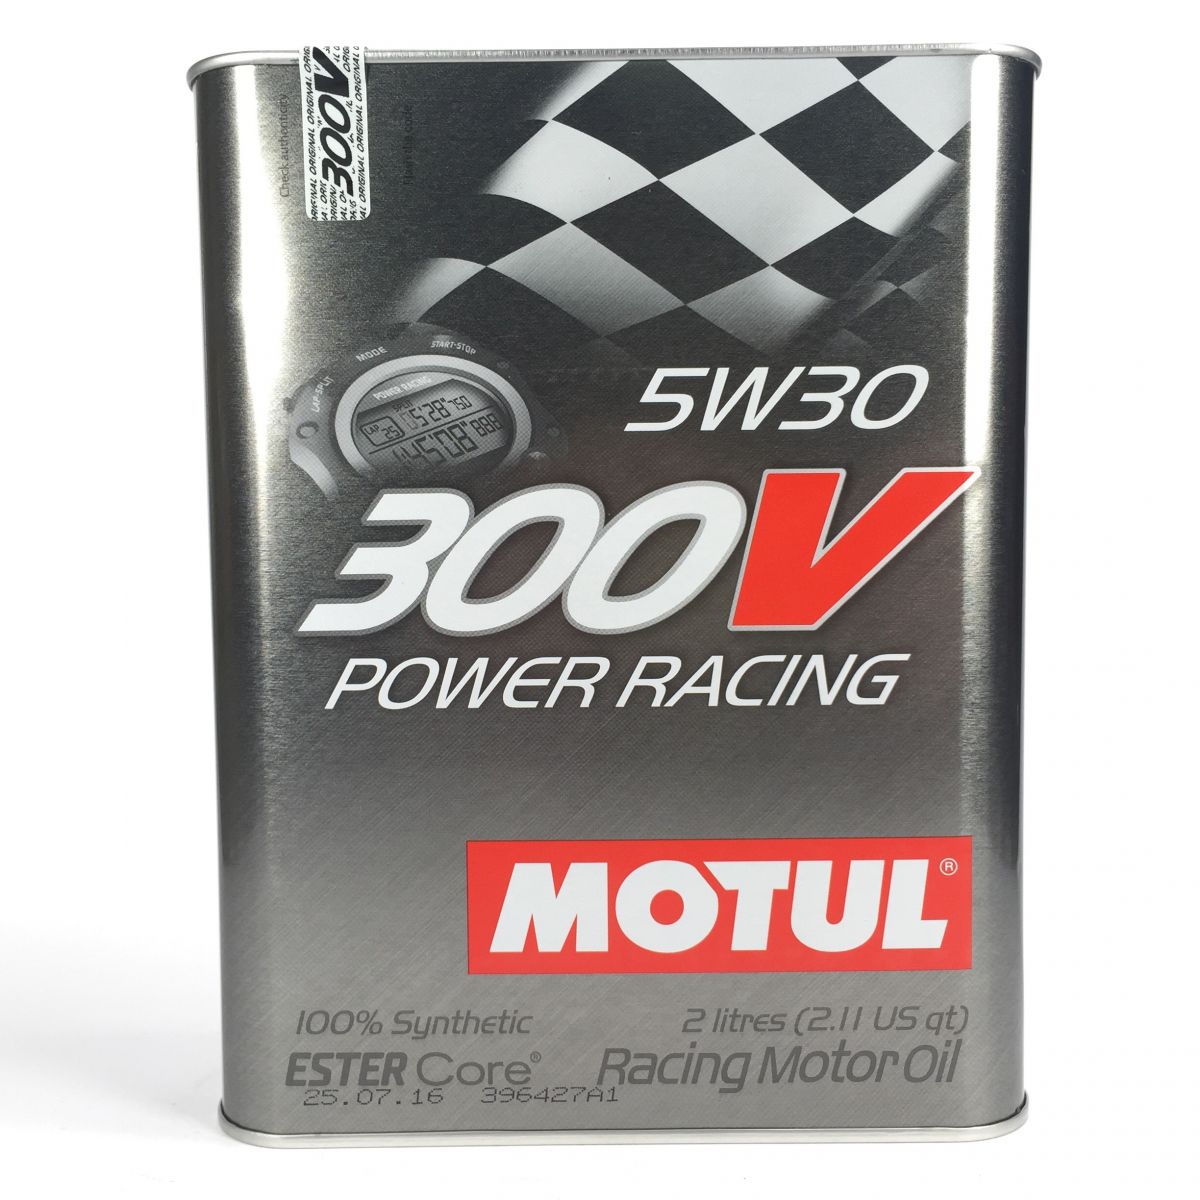 Купить моторное motul. Motul 300v Power Racing 5w-30 2л.. Motul 104241 масло моторное синтетическое "300v Power Racing 5w-30", 2л. Motul 300v Power Racing ester Core 5w30 2л. Моторное масло мотюль 300v 5w30.